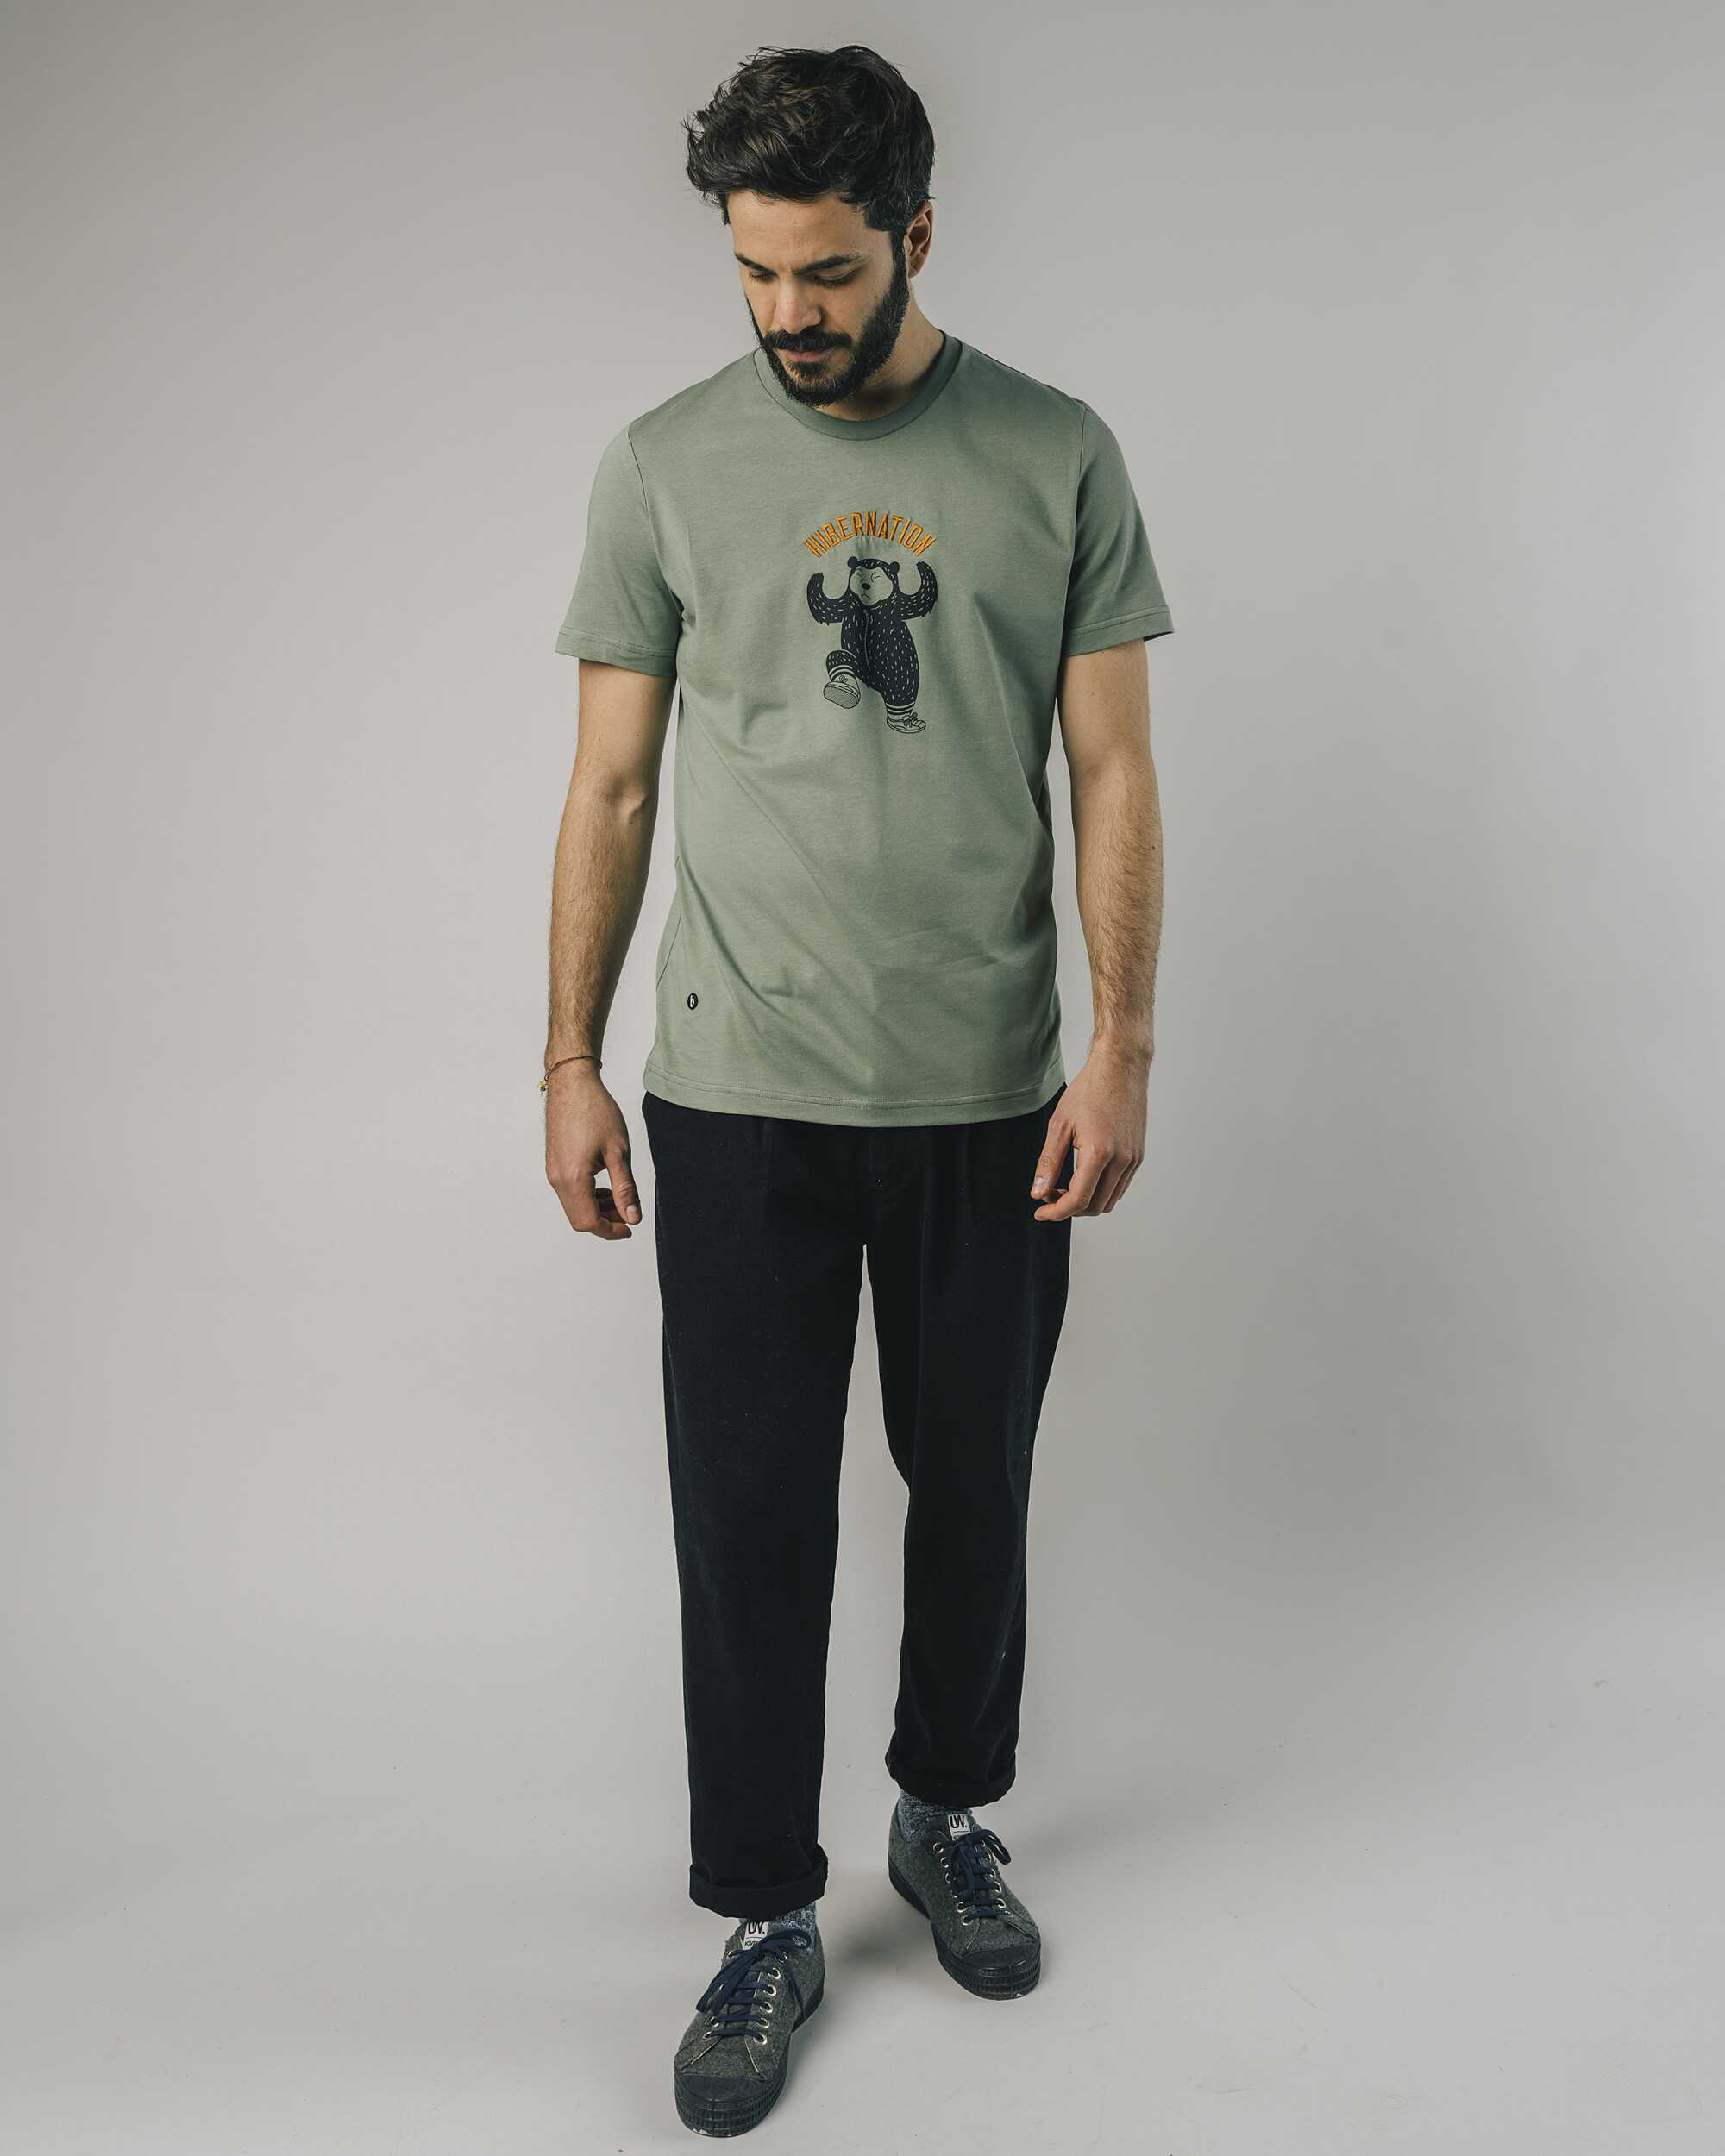 T-Shirt "Hibernation" in kakhi / oliv-grün aus 100% Bio - Baumwolle von Brava Fabrics